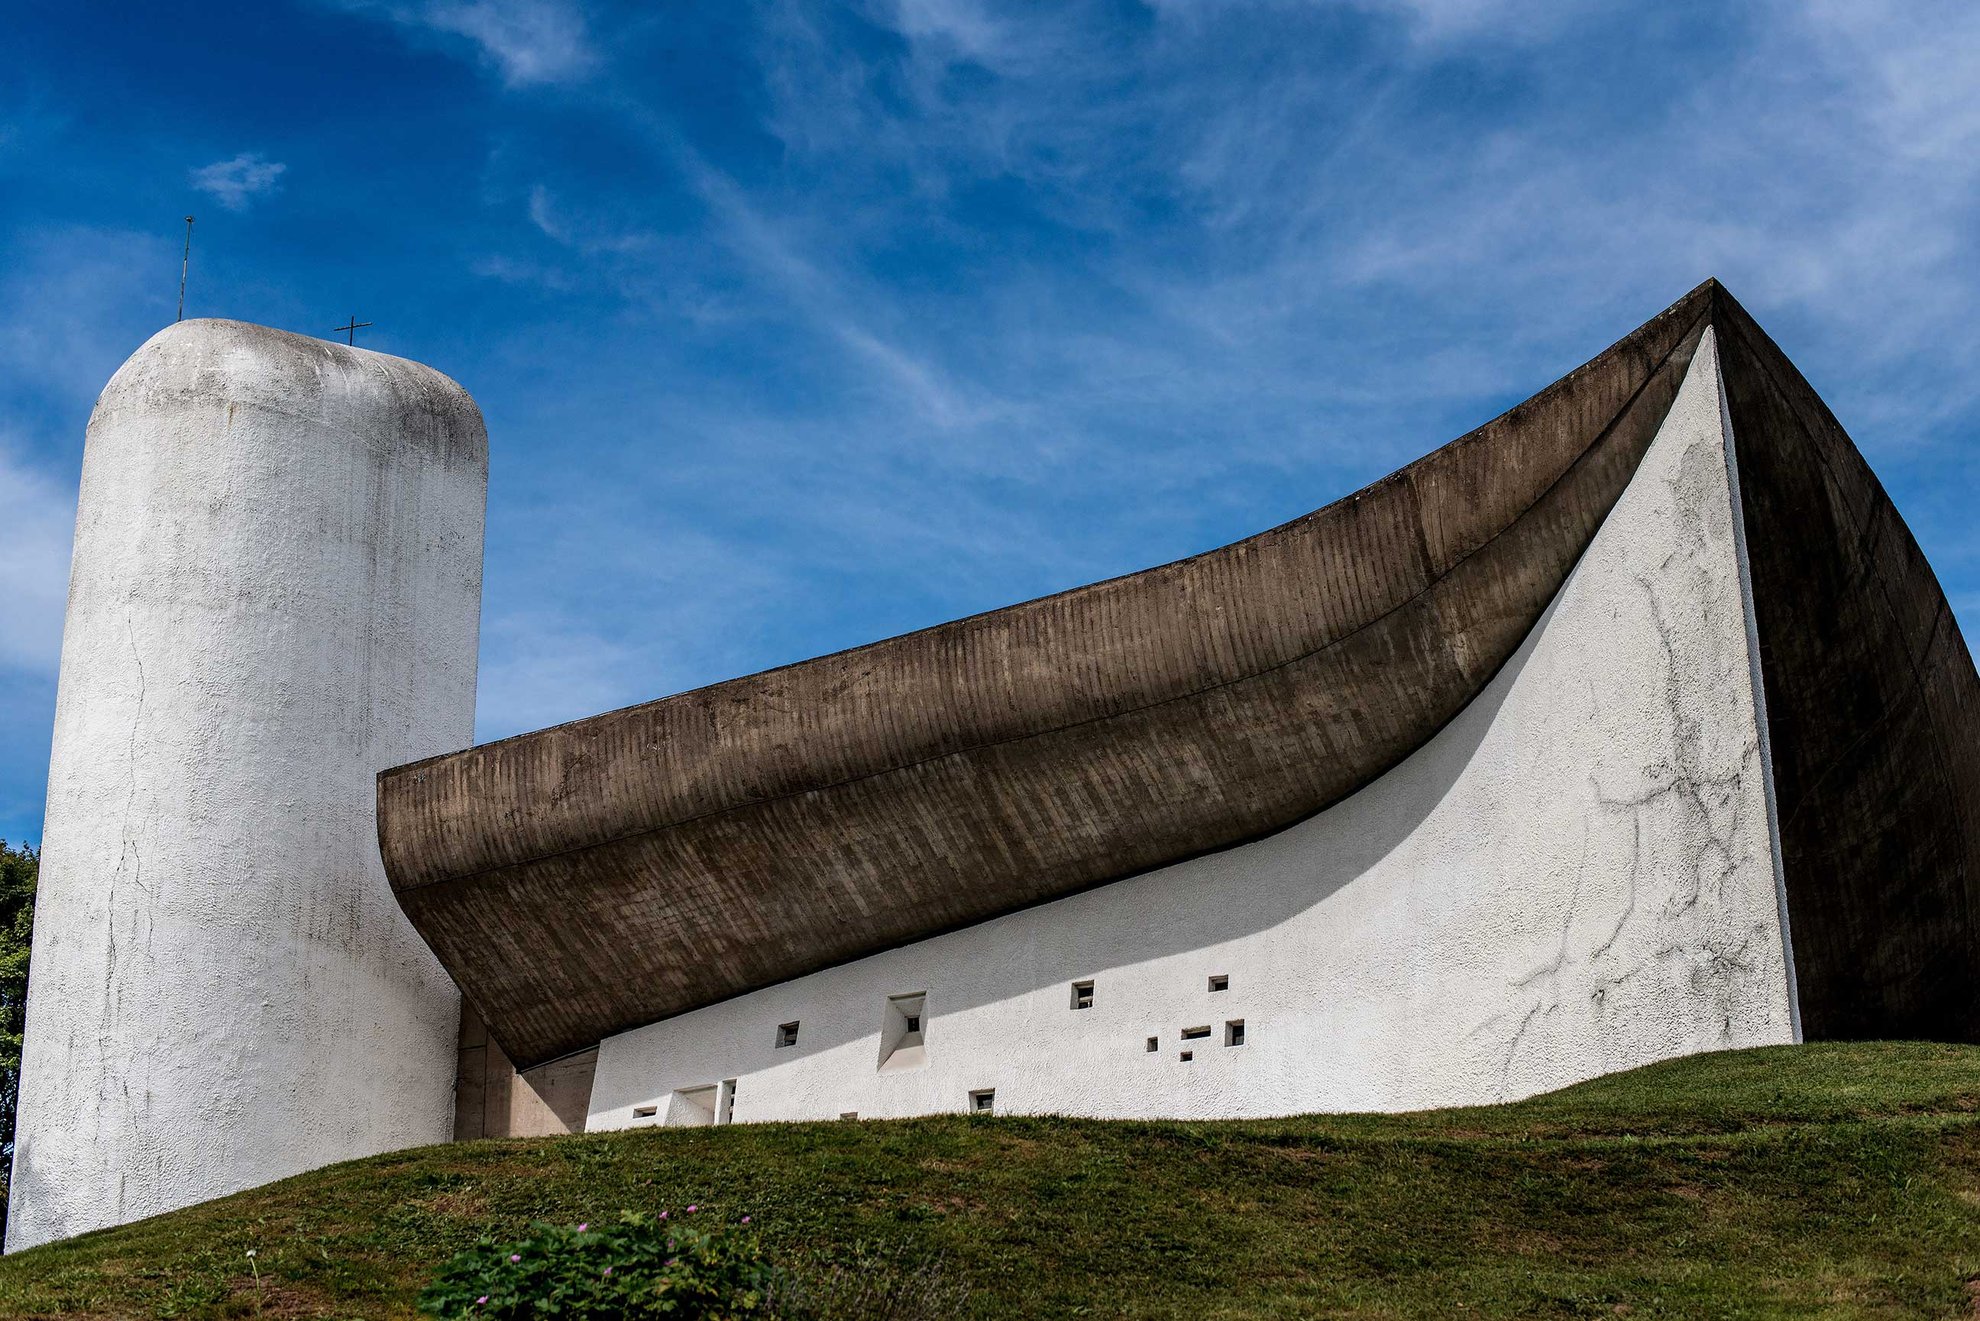 Le Corbusier’s Chapelle Notre-Dame-du-Haut de Ronchamp